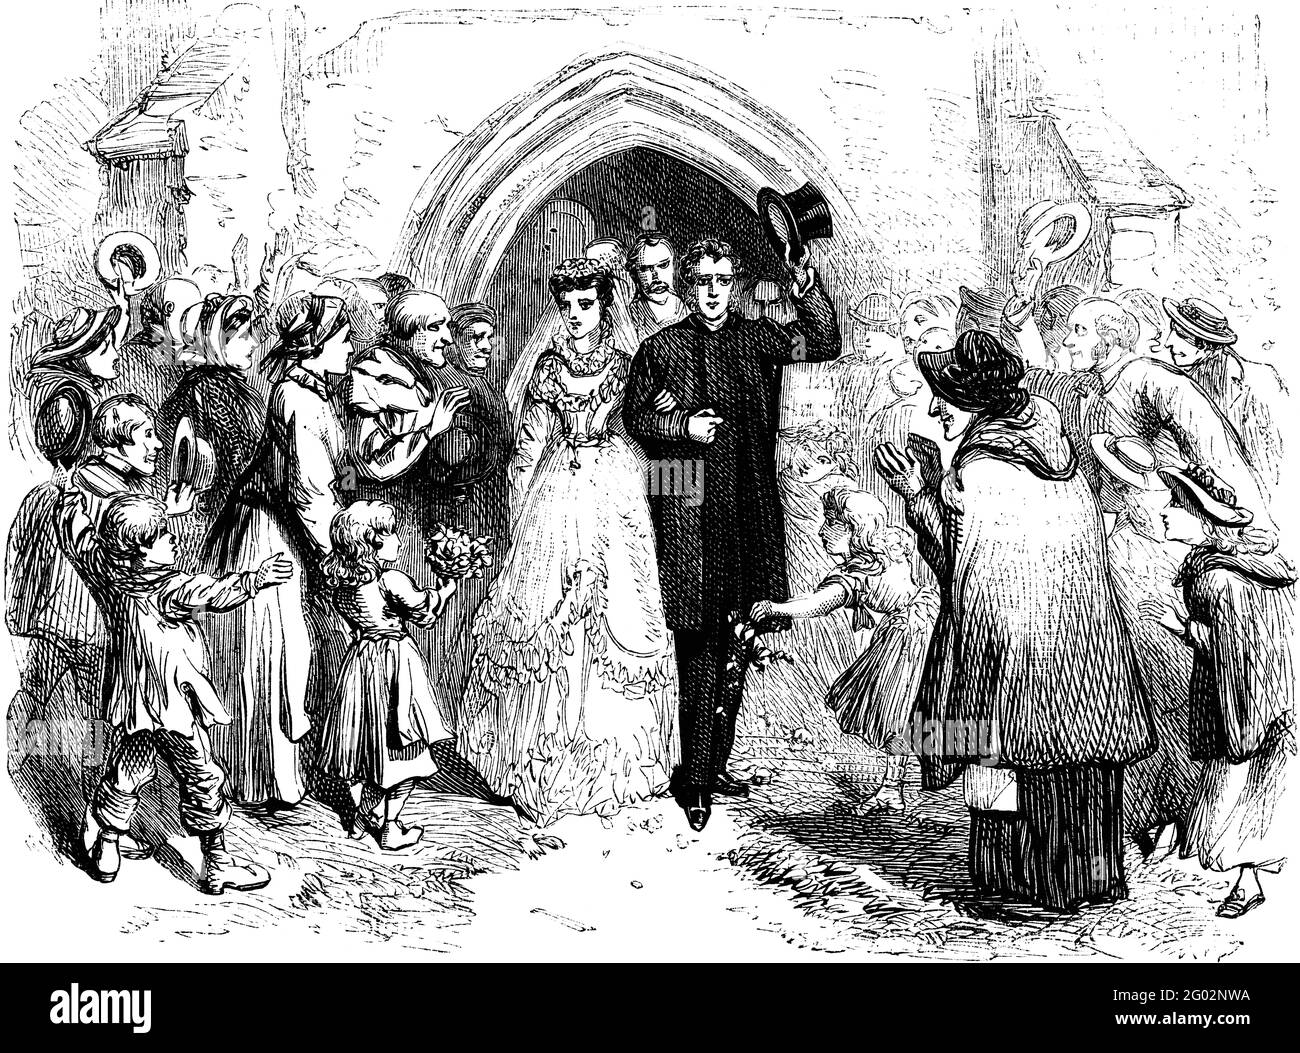 Eine gravierte Vintage-Illustration einer Hochzeit, aus einem viktorianischen Buch von 1870, das nicht mehr urheberrechtlich geschützt ist Stockfoto